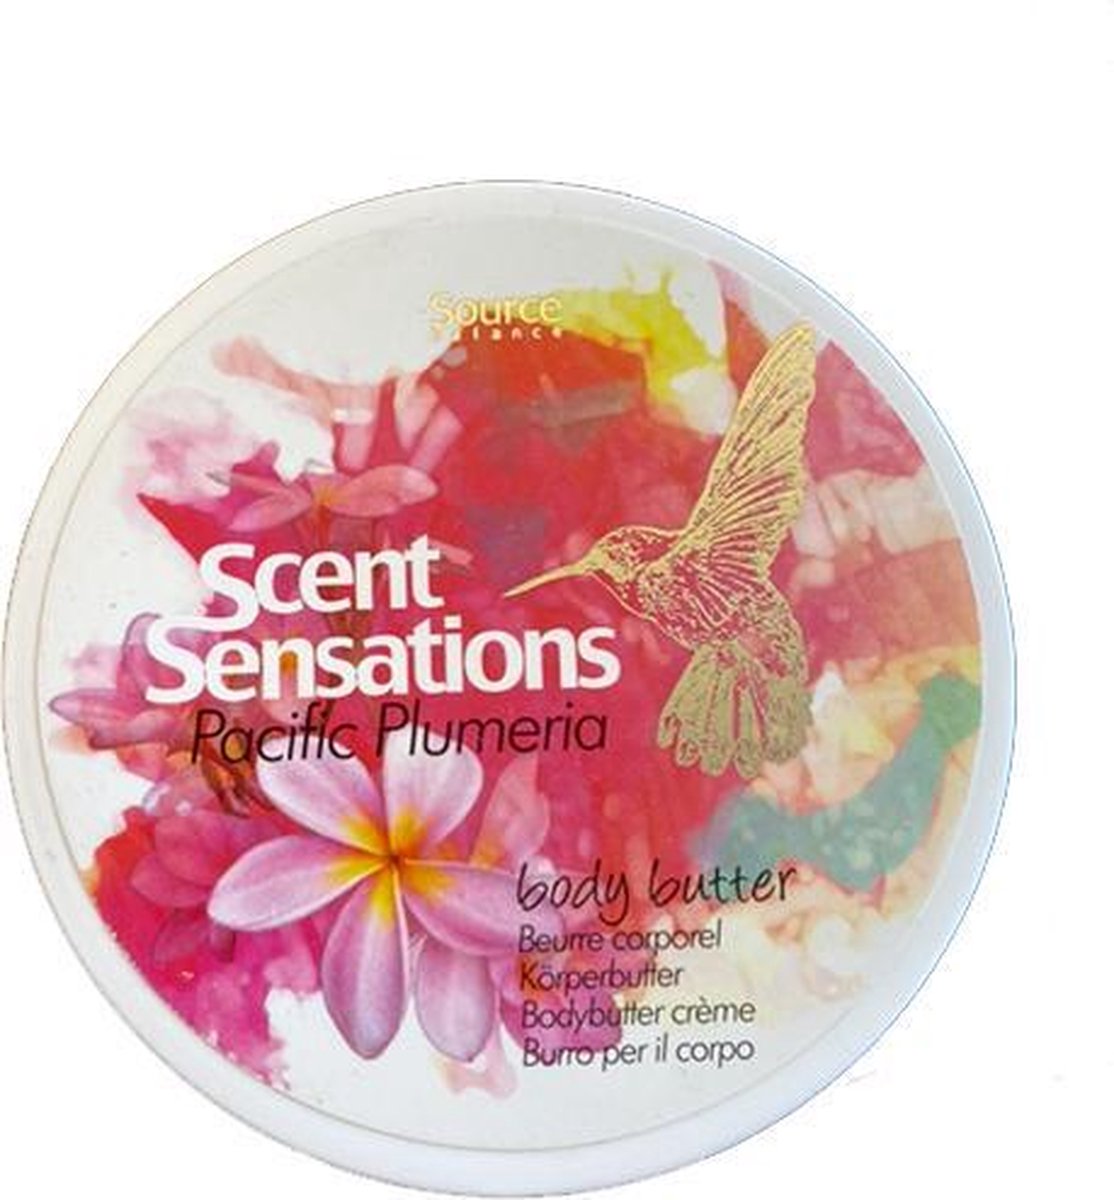 Source Balance - Scent Sensations - Body butter crème - Pacific Plumeria